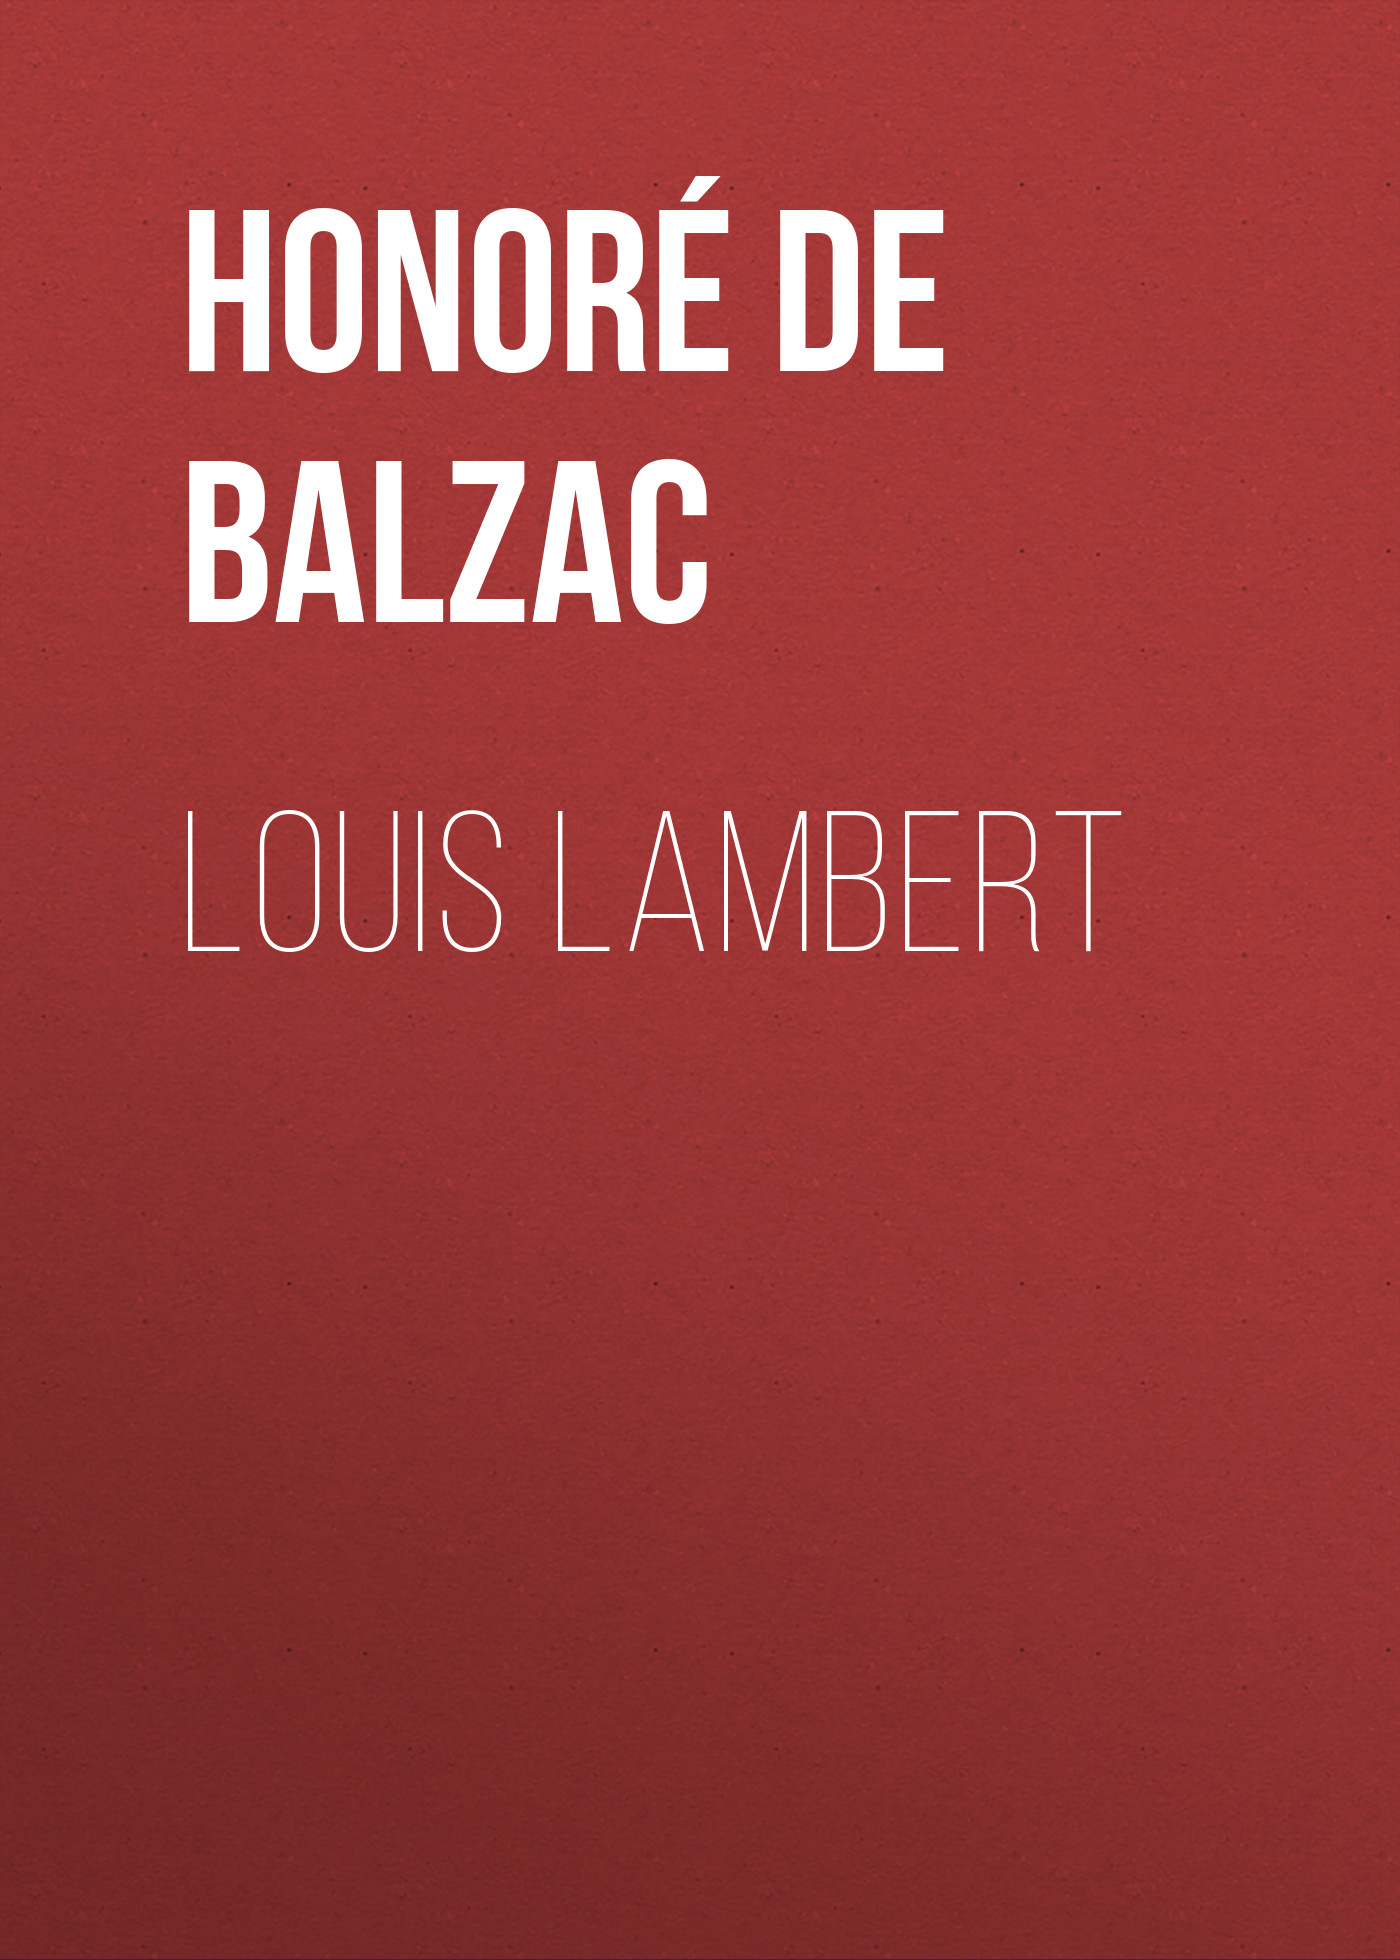 Книга Louis Lambert из серии , созданная Honoré Balzac, может относится к жанру Литература 19 века, Зарубежная старинная литература, Зарубежная классика. Стоимость электронной книги Louis Lambert с идентификатором 25020643 составляет 0 руб.